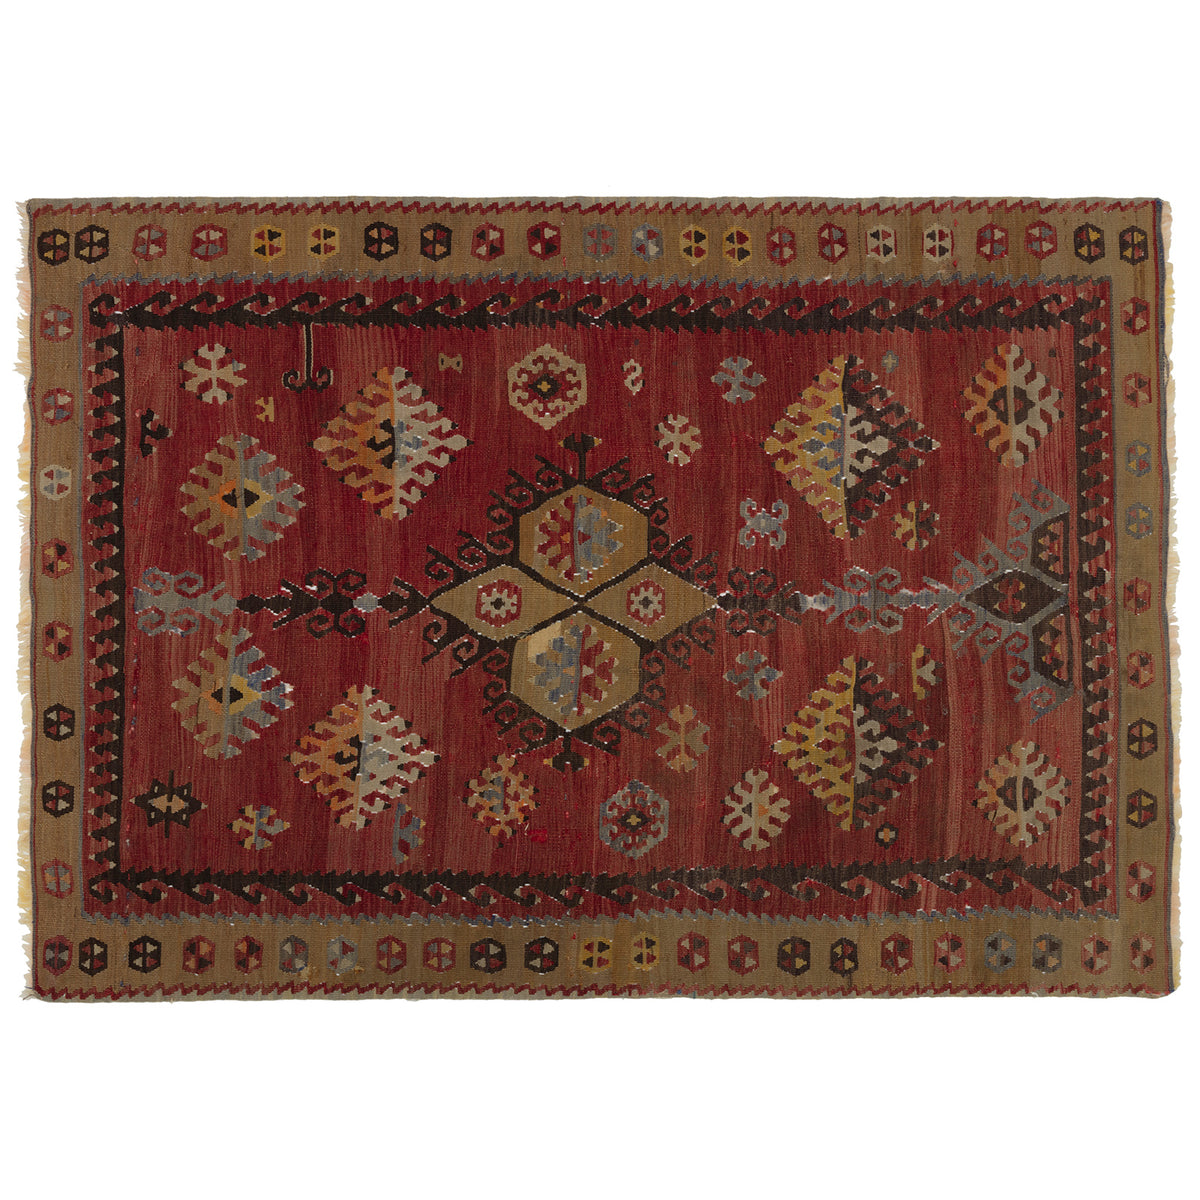 Small vintage Kilim rug no. K447, size 150 x 102 cm